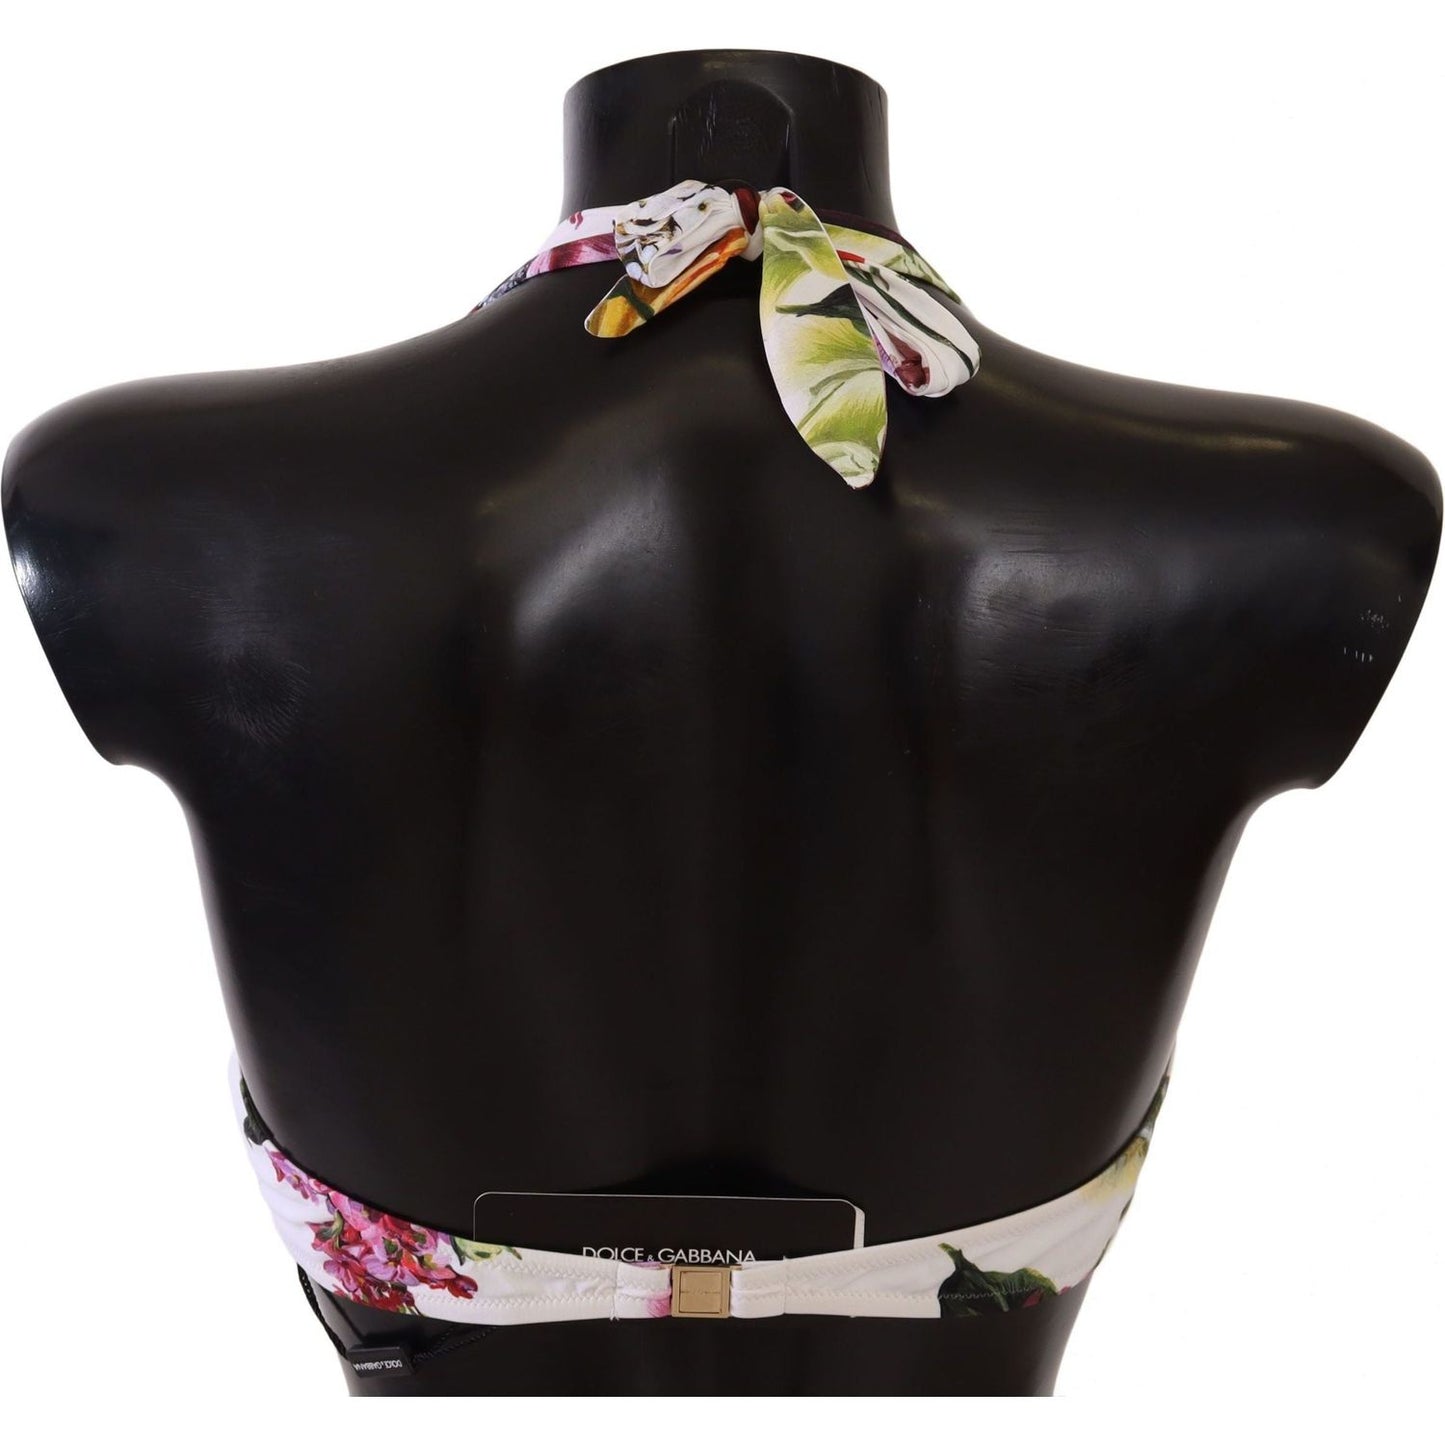 Dolce & GabbanaChic Floral Print Bikini Top - Summer EssentialMcRichard Designer Brands£169.00